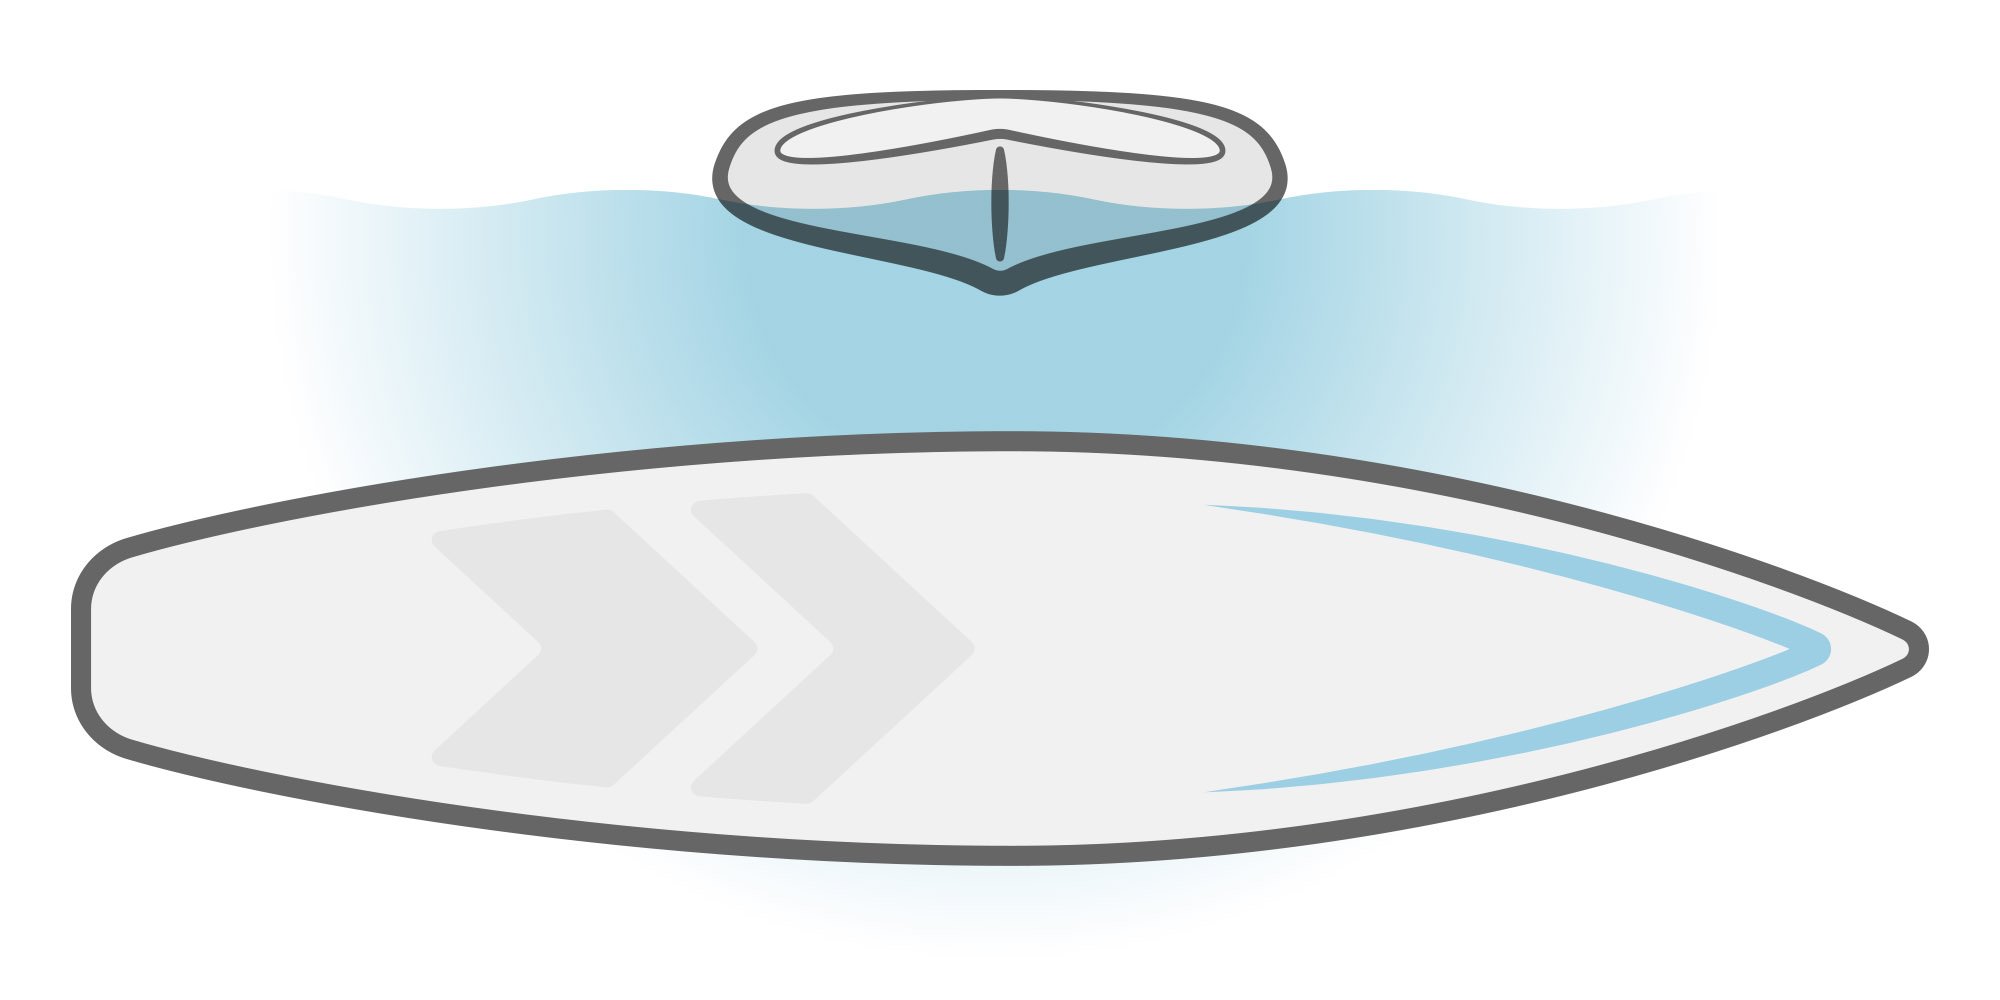 Ilustrácia SUP paddleboardu so špicatým trupom. 